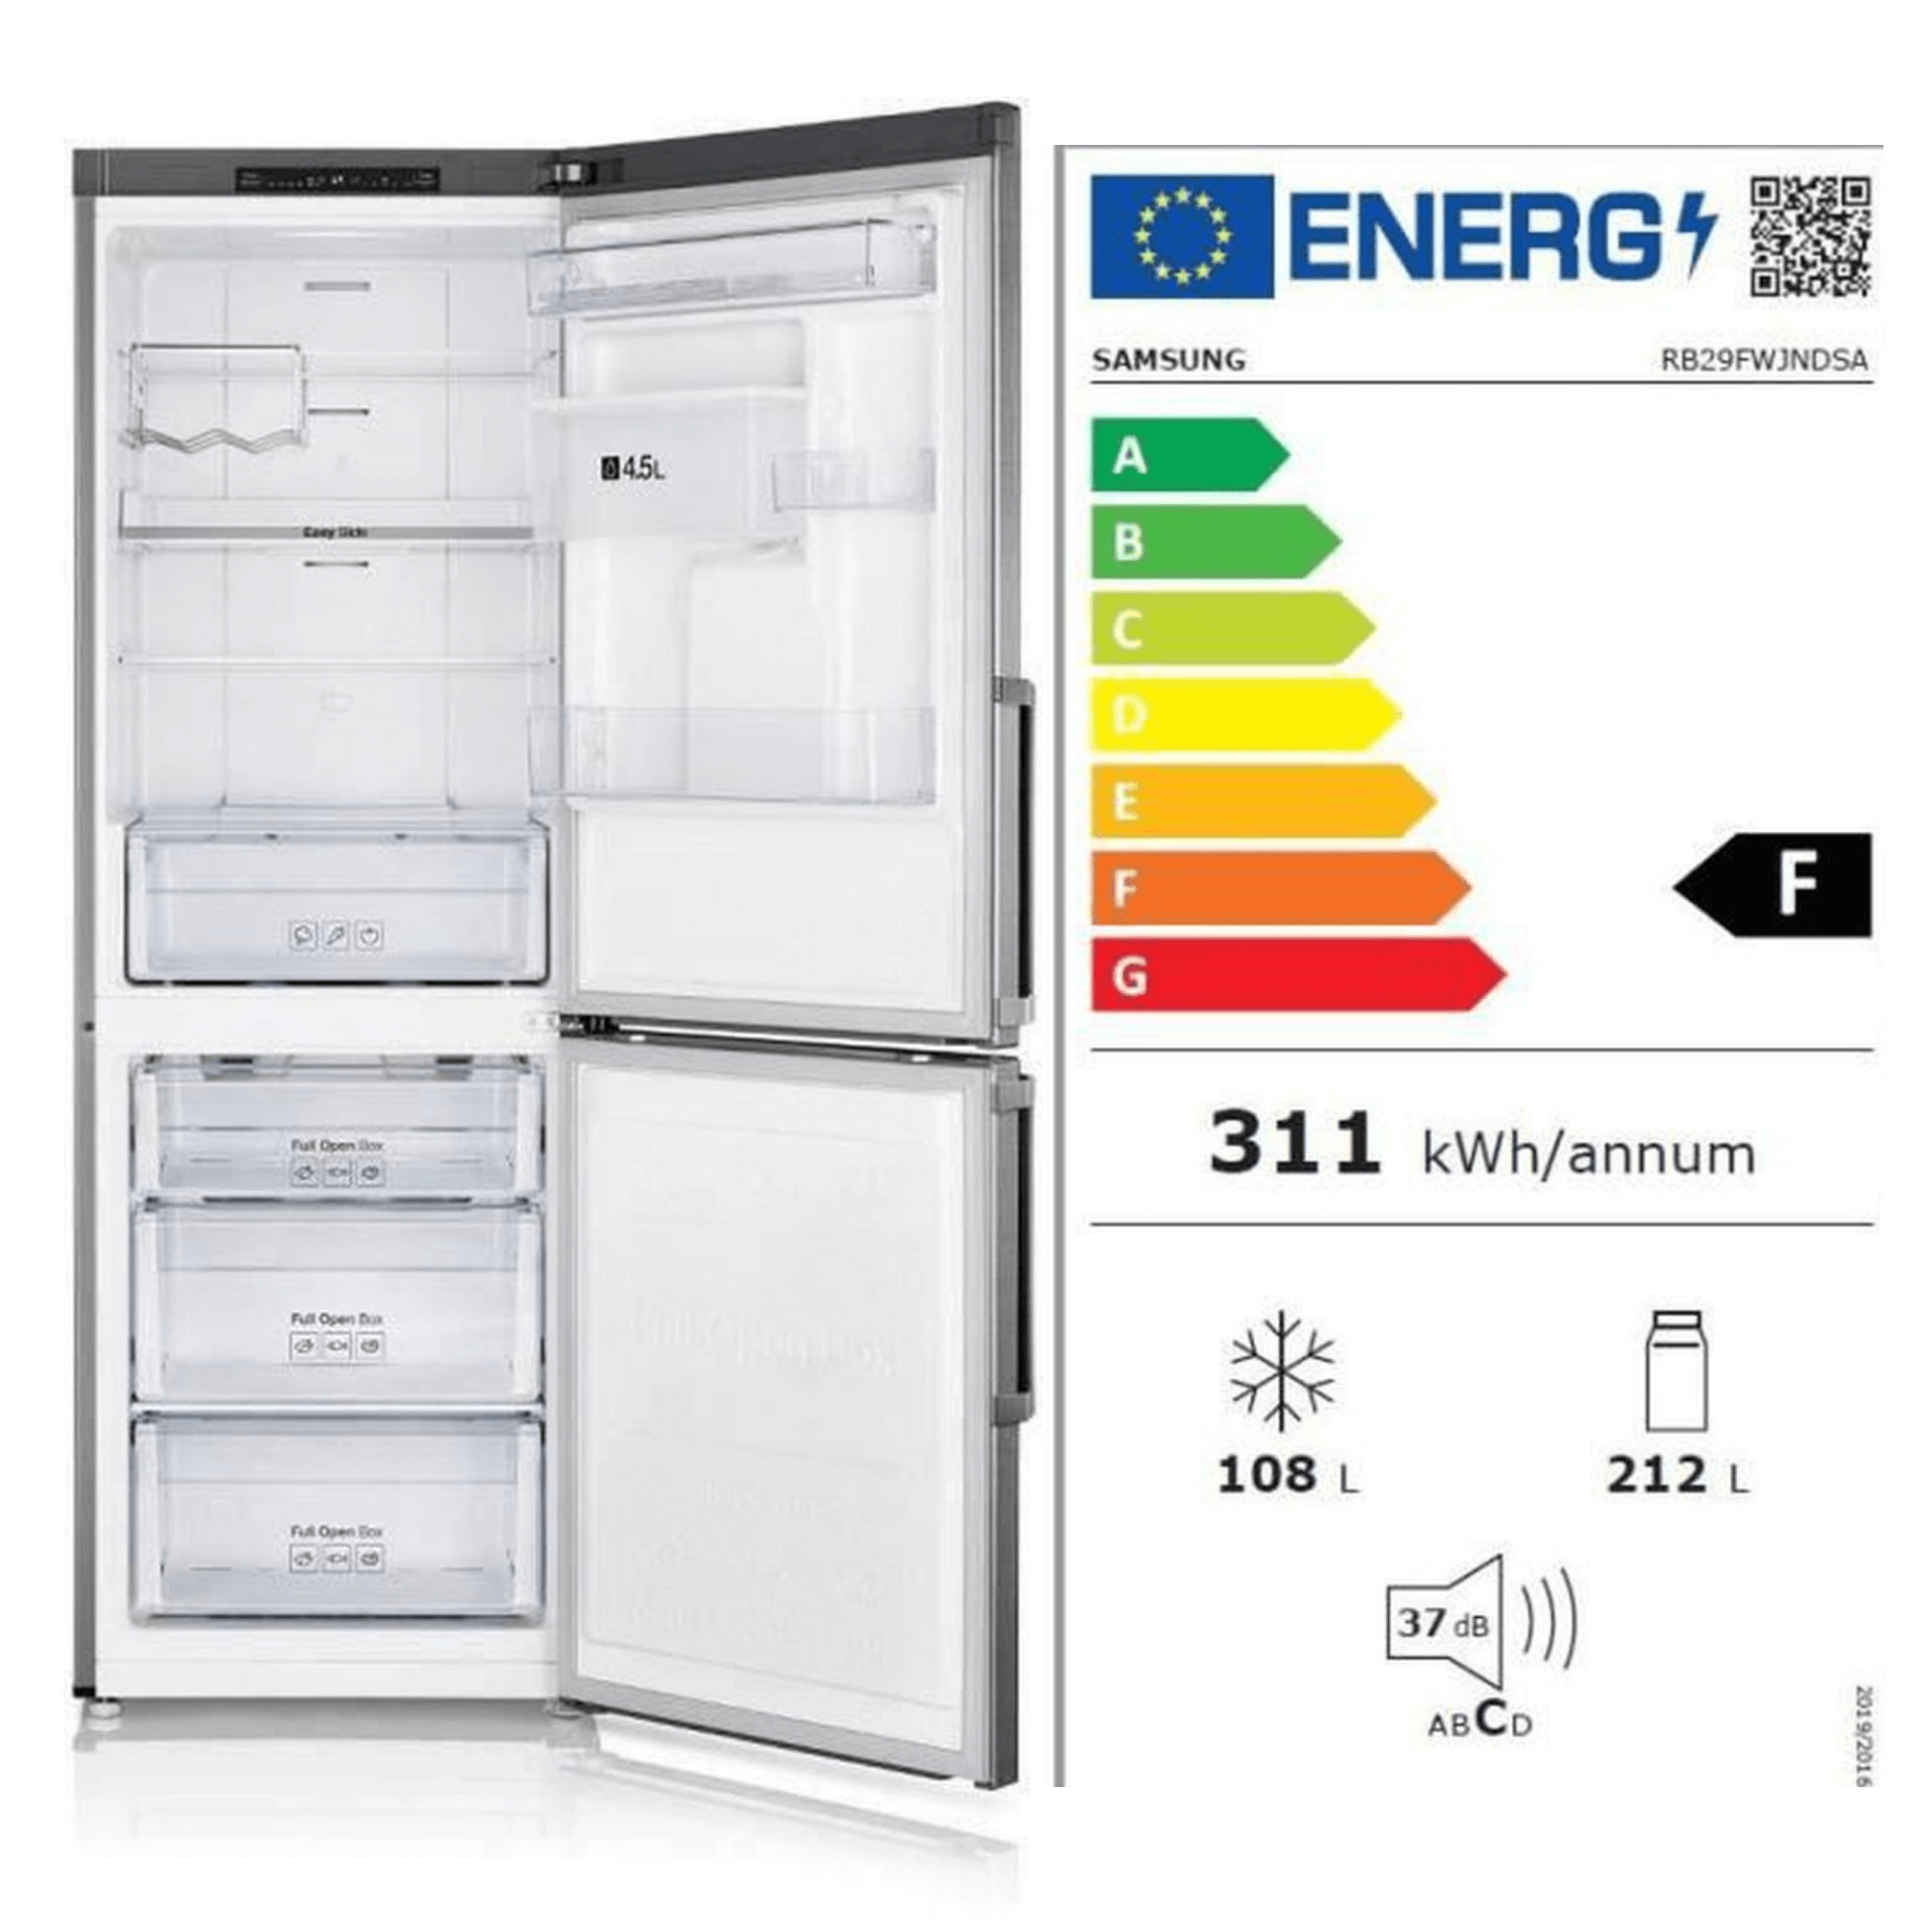 réfrigérateur combiné Samsung avec étiquette énergétique